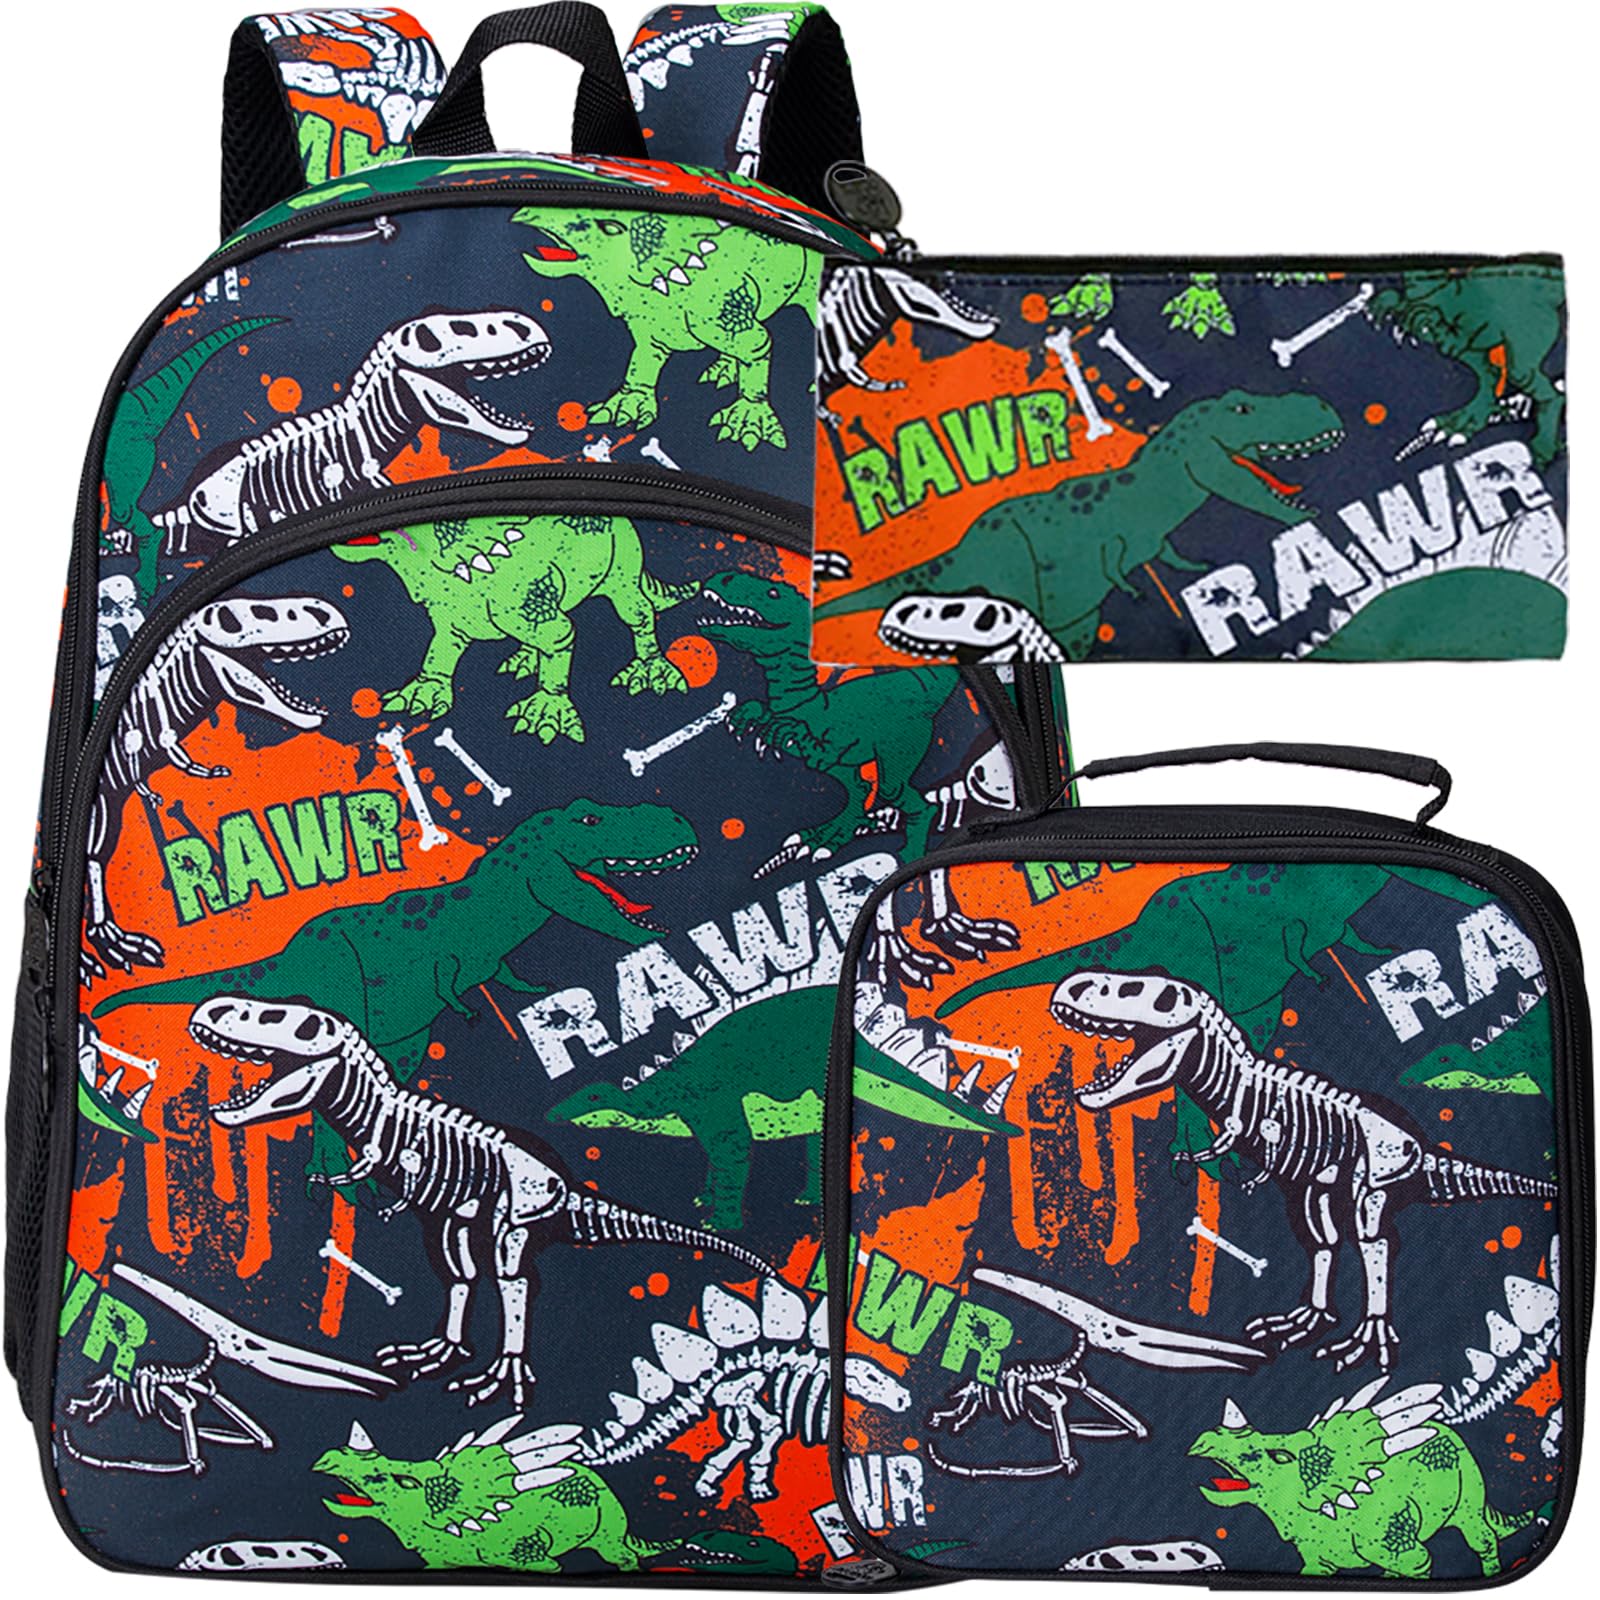 CCJPX Dinosaur Backpack for Boys, 16” Kids Preschool Bookbag and Lunch Box for Kindergarten Elementary